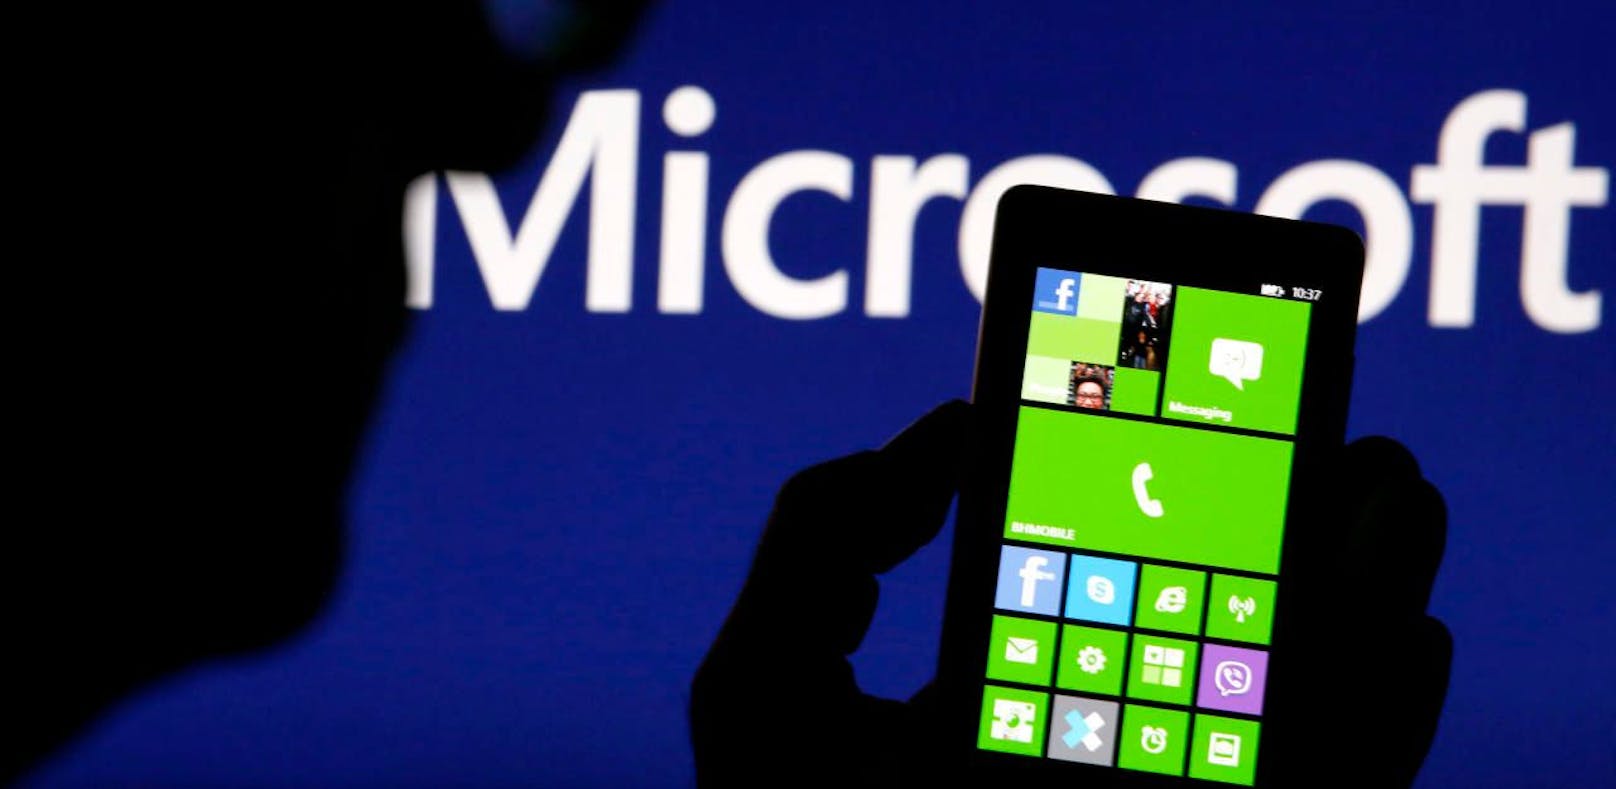 Das Windows Phone ist Geschichte. Das hat Microsoft nun auch öffentlich zugegeben.